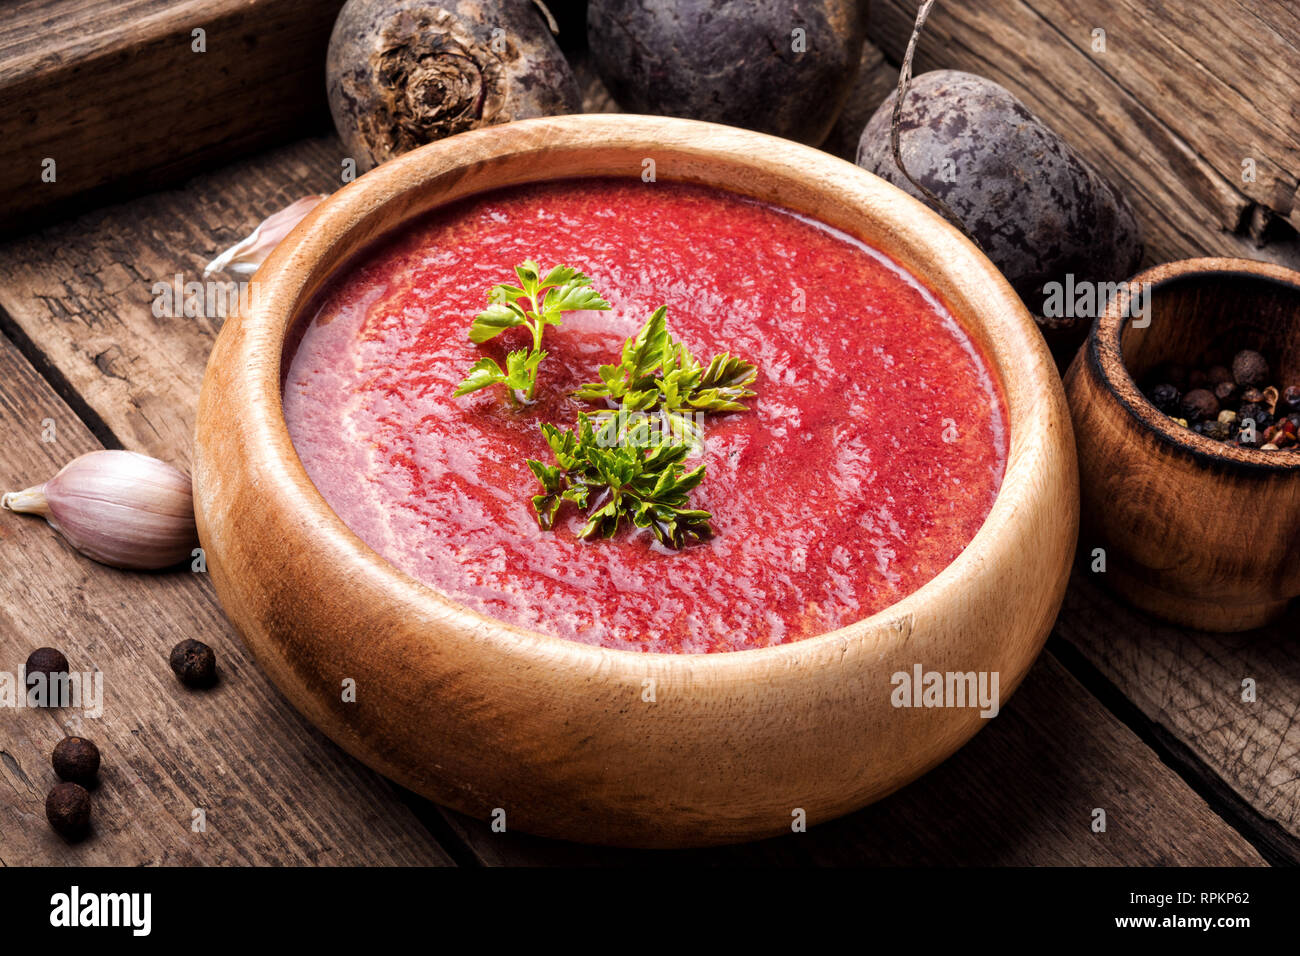 Rote-bete-Suppe und frisches Gemüse auf einem hölzernen Hintergrund Stockfoto